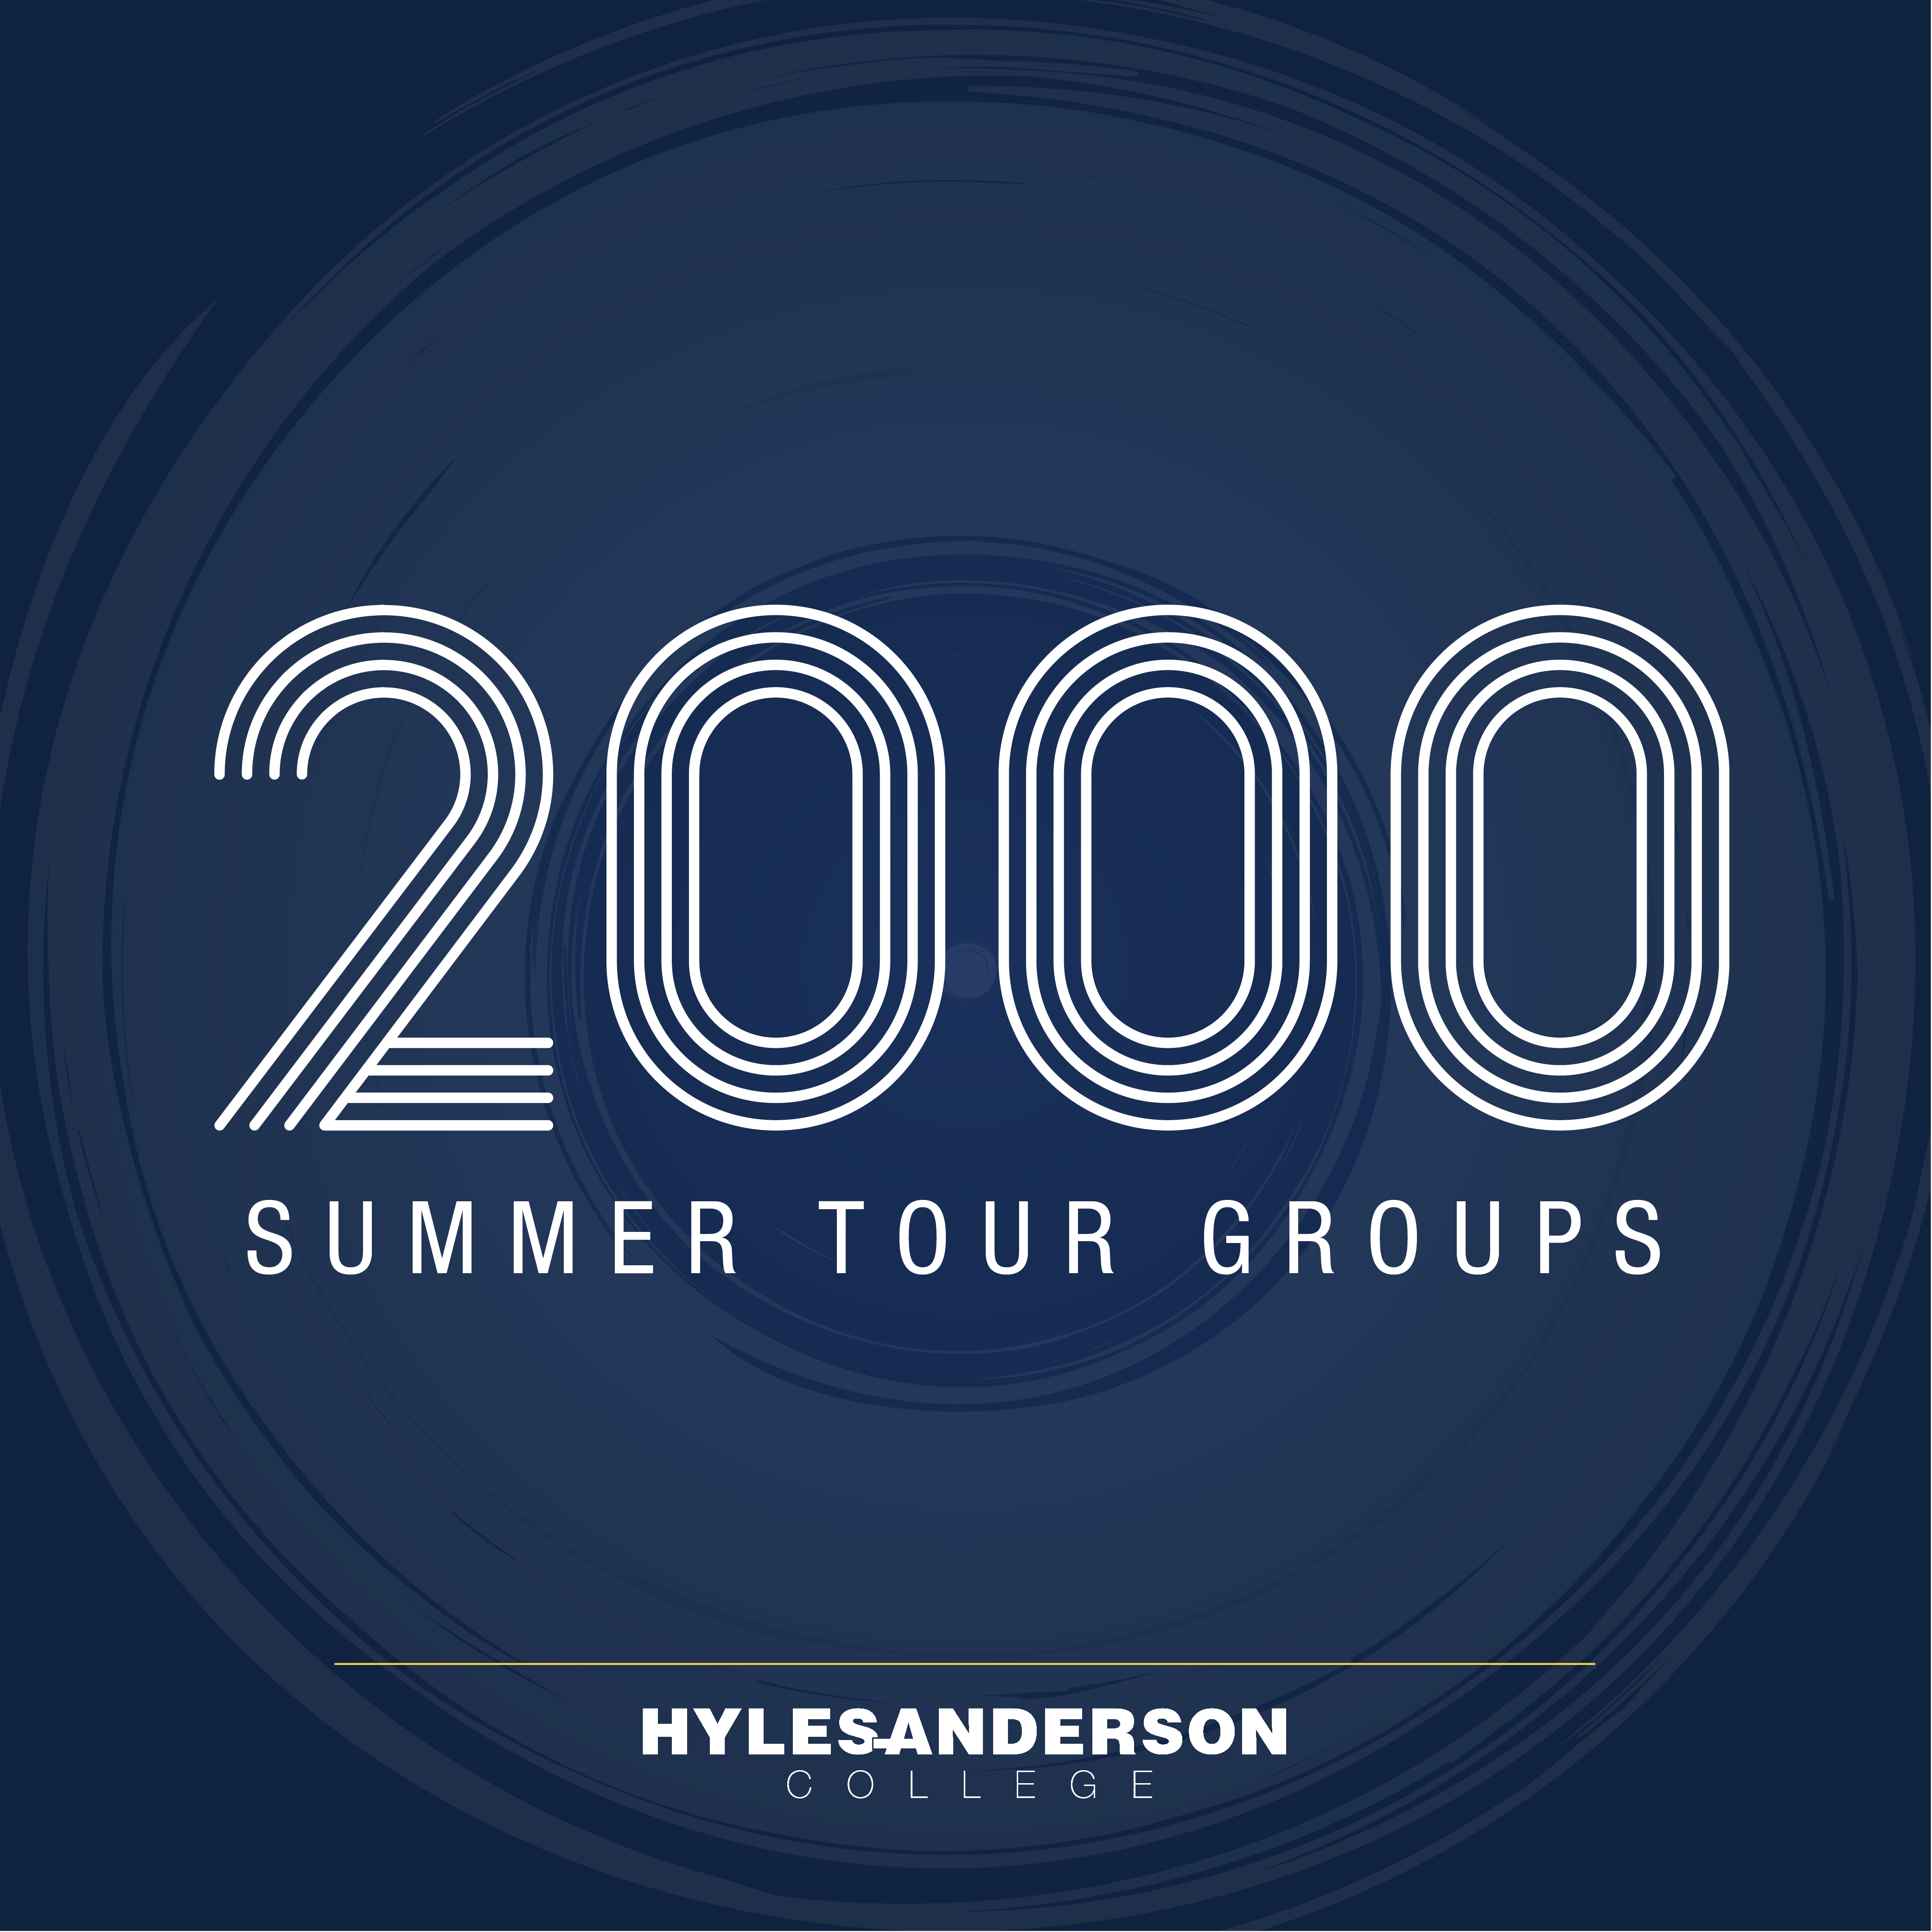 2000 Summer Tour